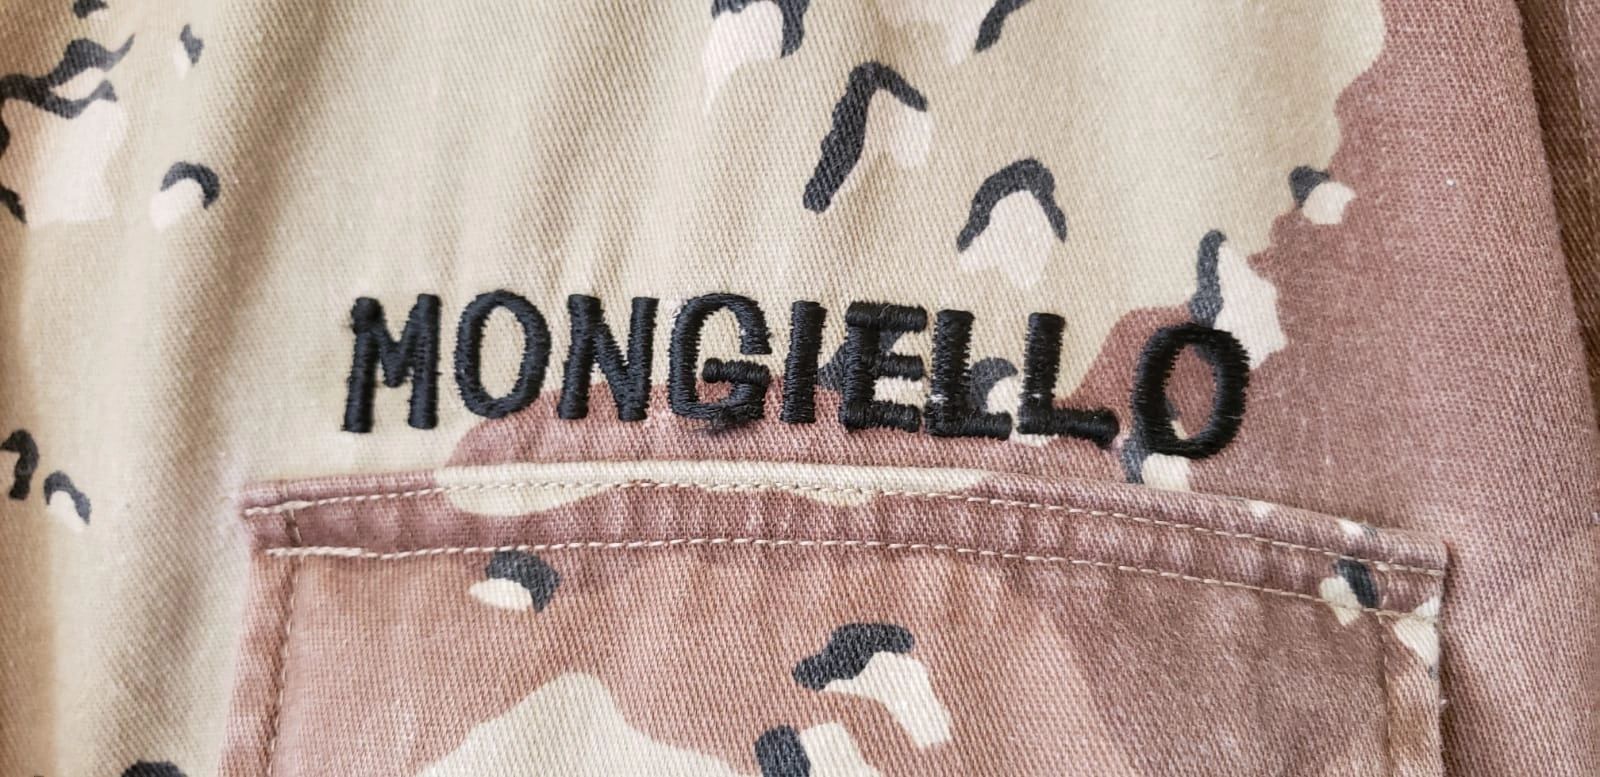 Marti Mongiello's camouflage uniform.